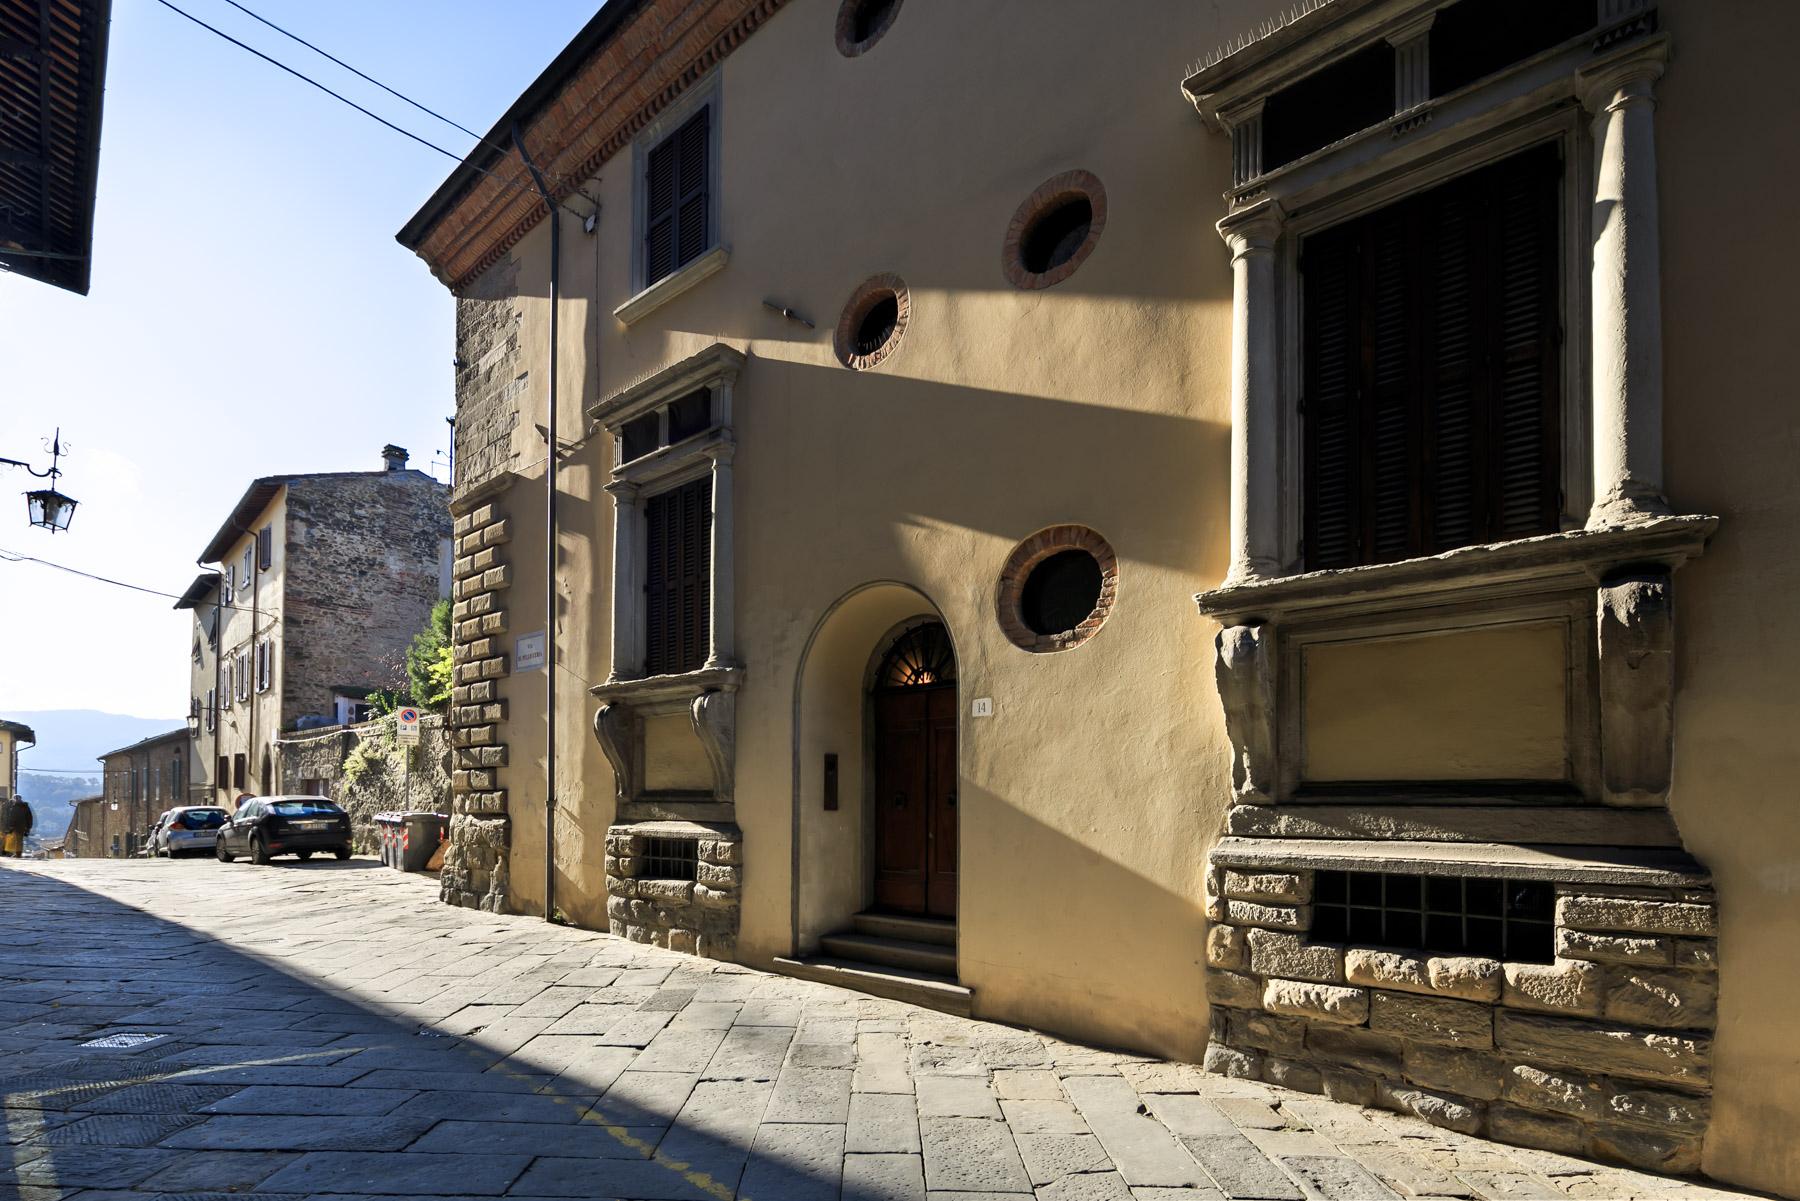 Palazzo Rinascimentale in Vendita a pochi passi da Piazza Grande, Arezzo - 23